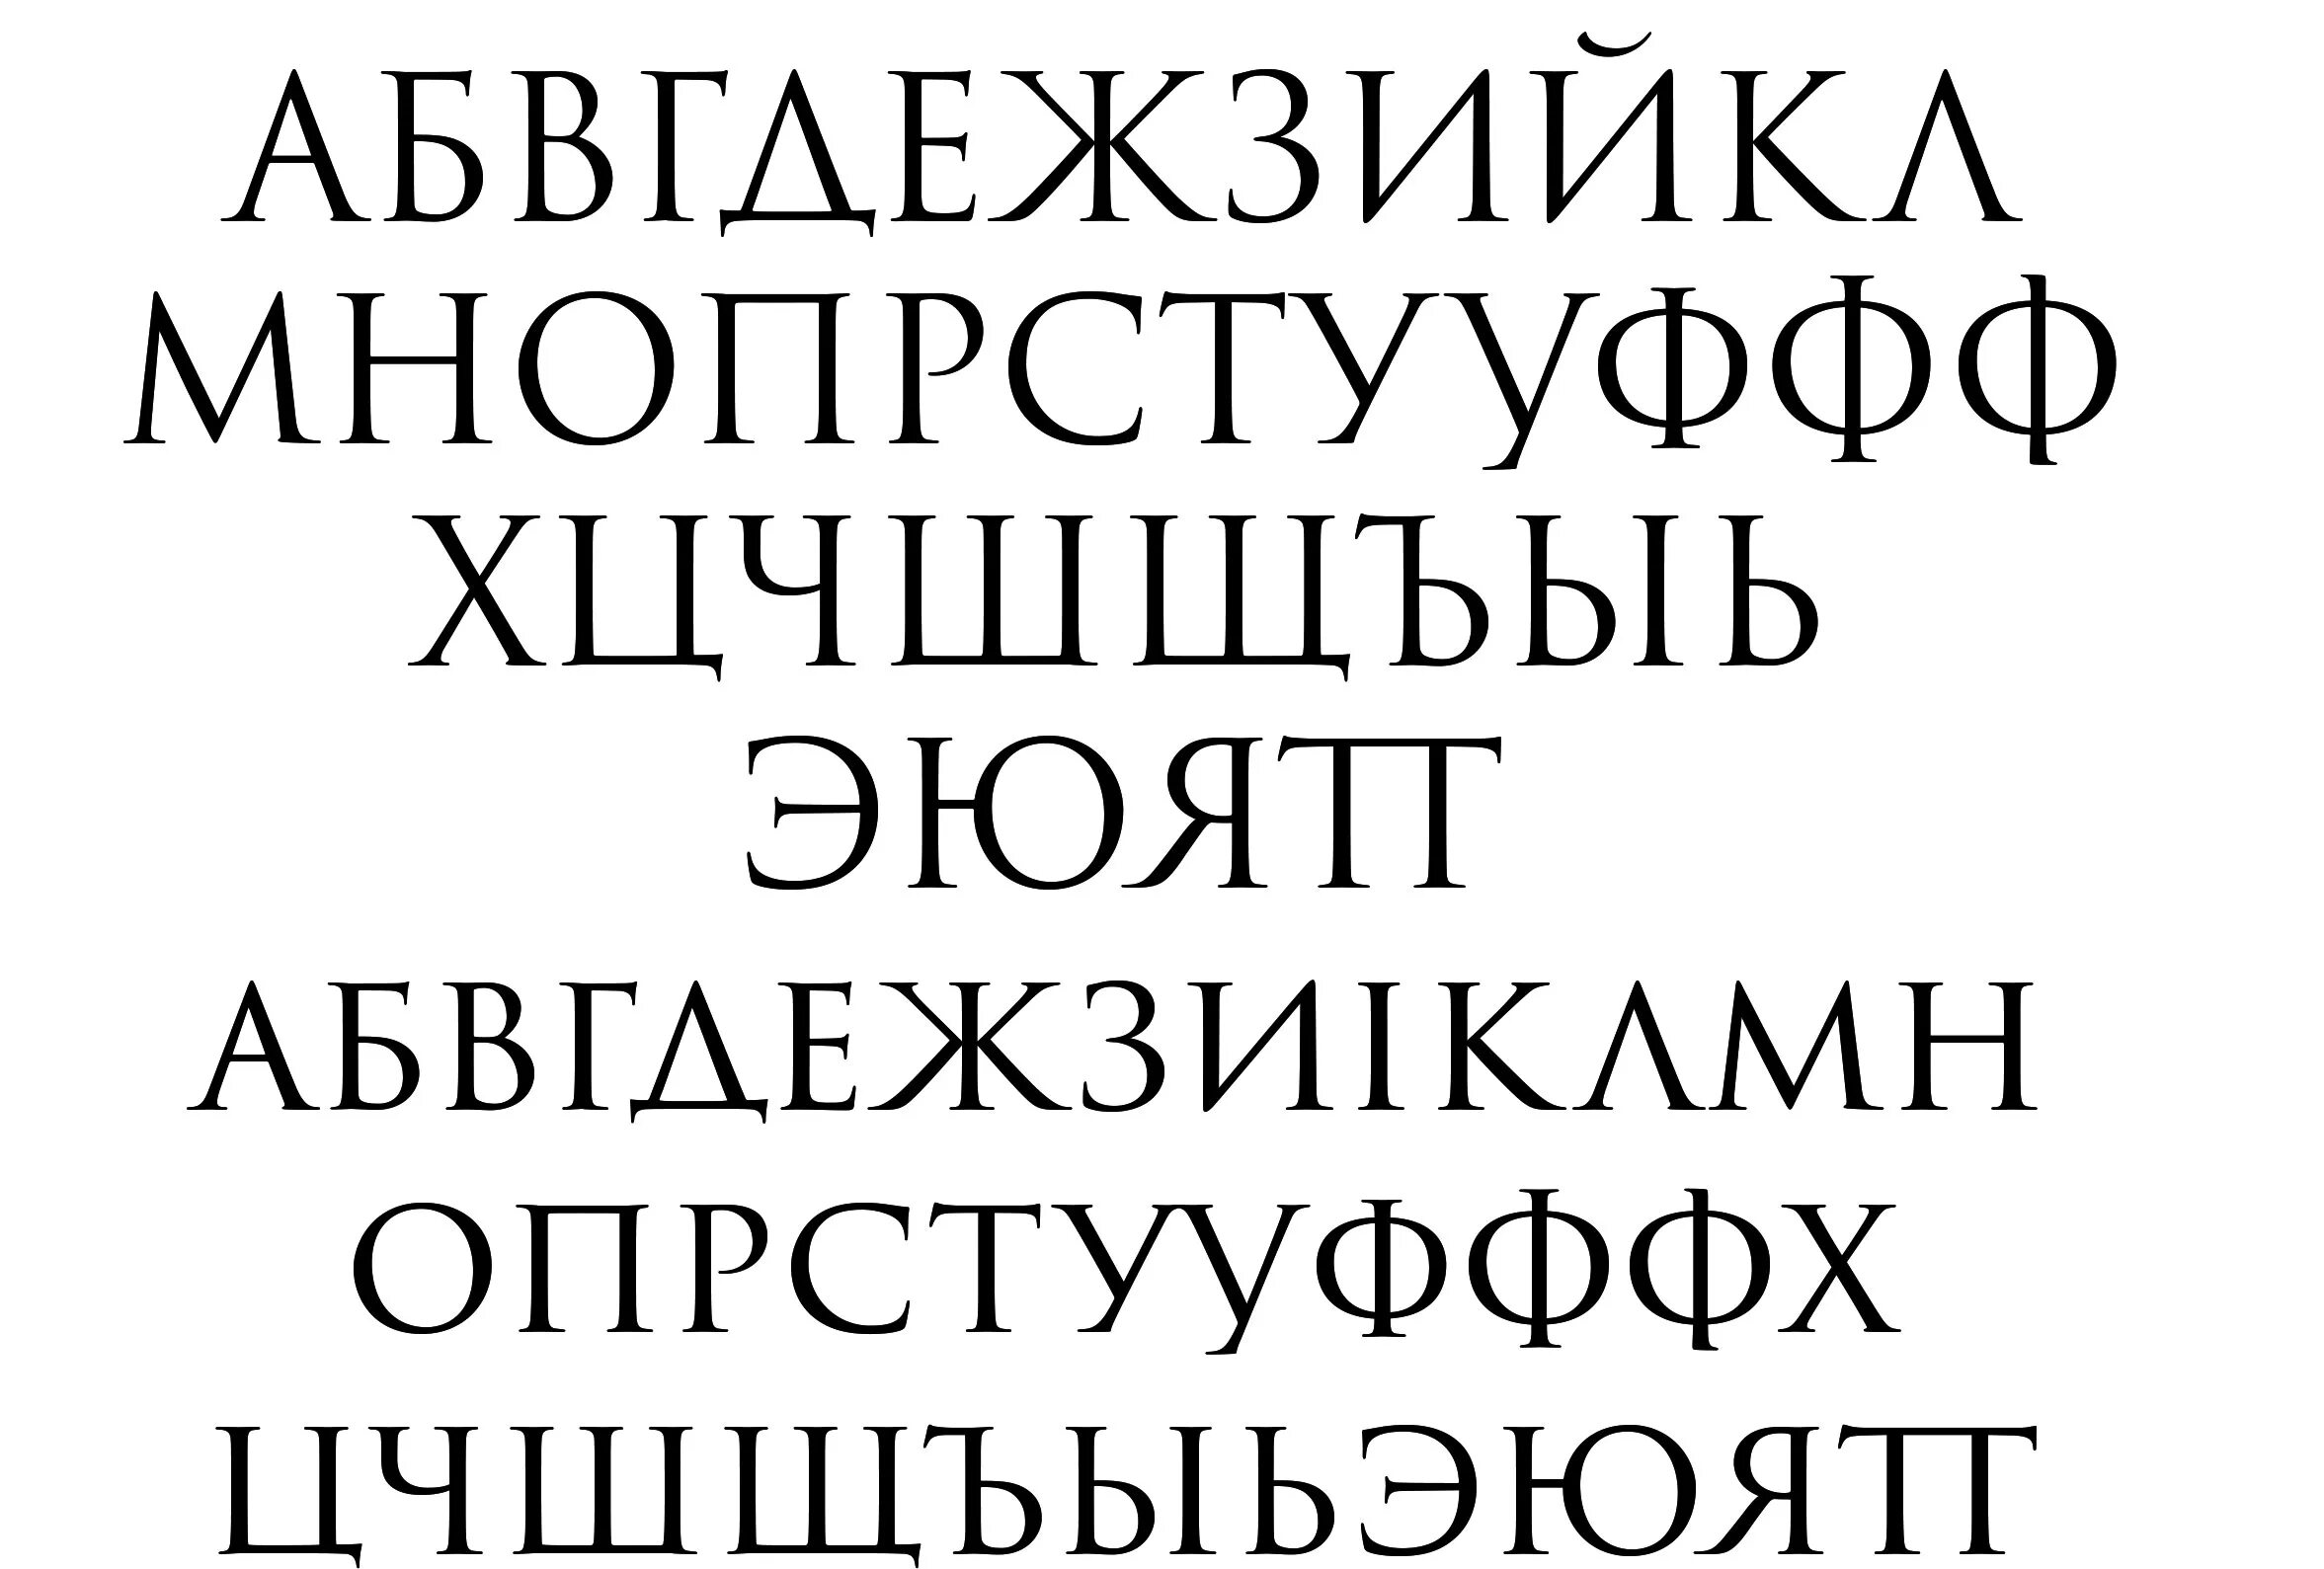 Гротеск шрифт это. Классический шрифт без засечек. Шрифт классический русский. Красивые русские шрифты без засечек. Красивый классический шрифт.